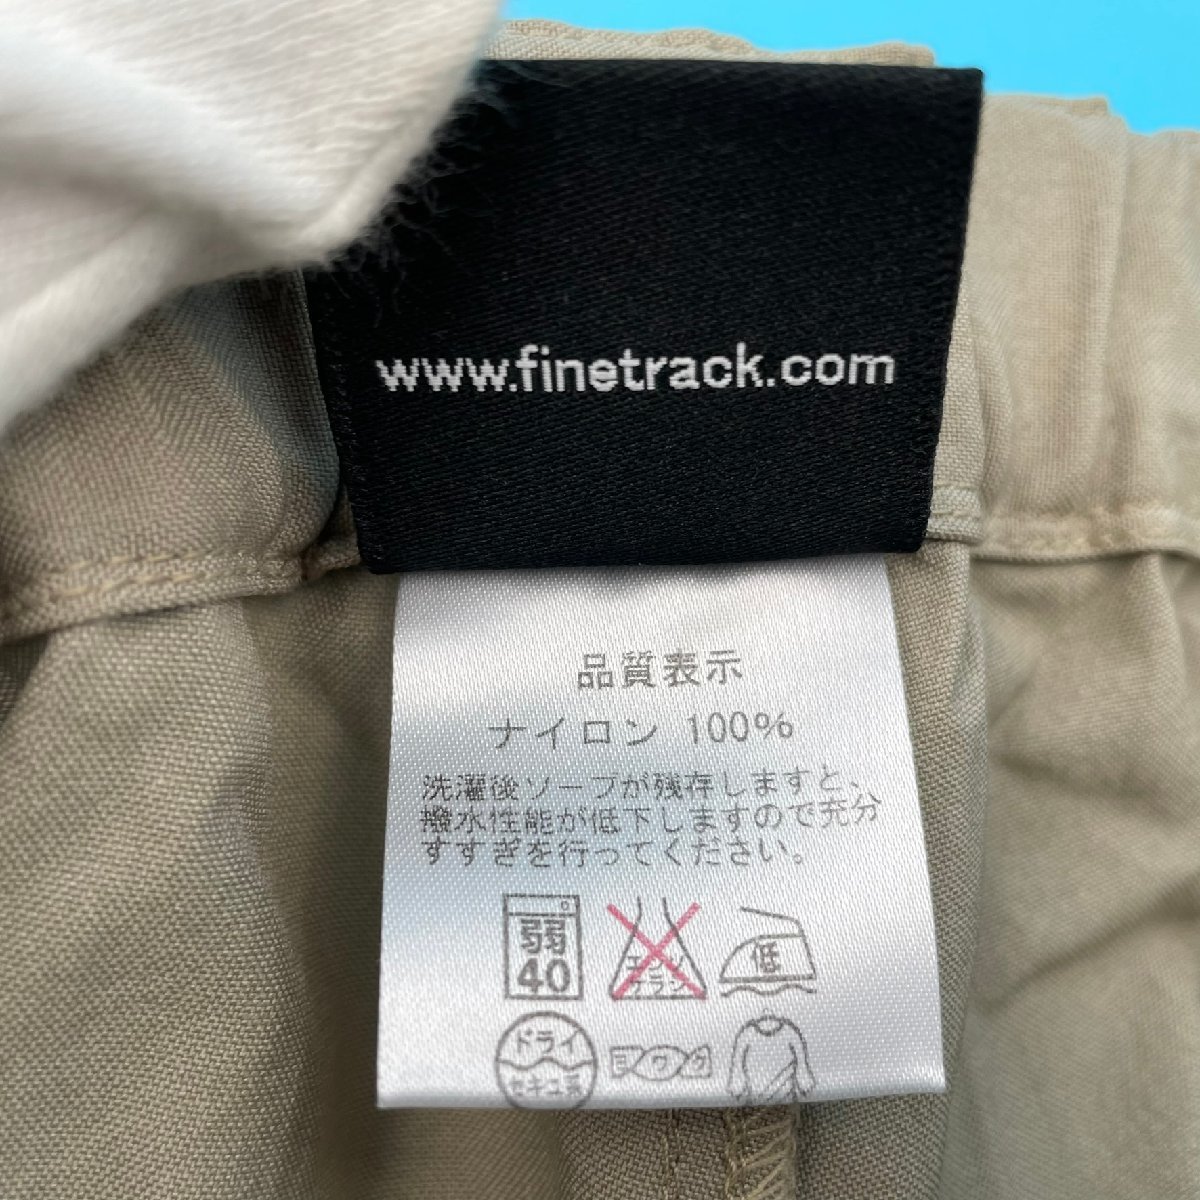 [A9617P008]Fnetrackfa INTRAC L размер брюки брюки женский бежевый climbing брюки альпинизм уличный легкий сделано в Японии 